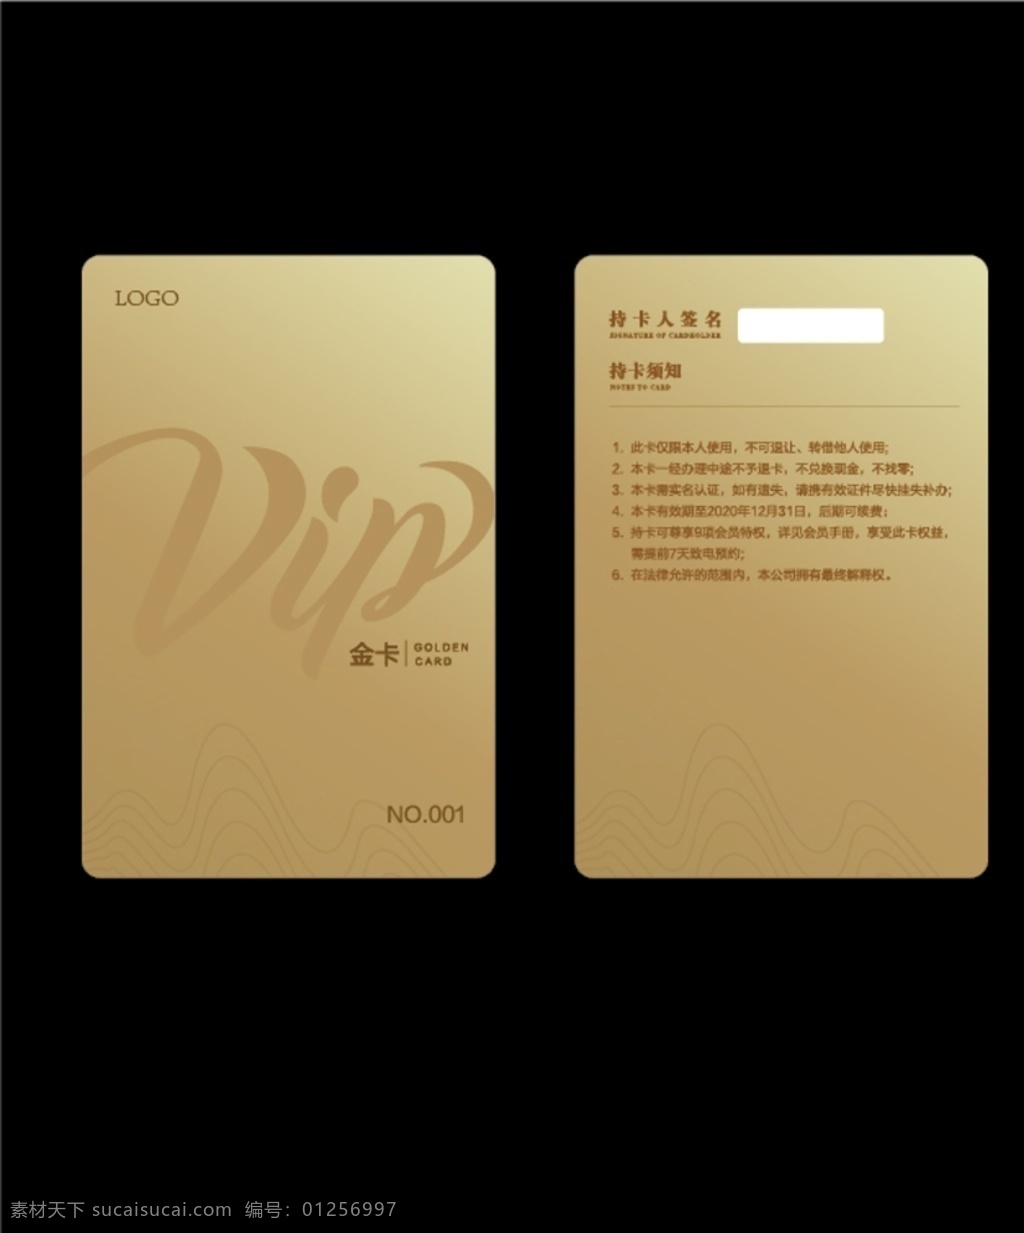 会员卡 金色 卡片 vip 促销 质感 品质 名片卡片